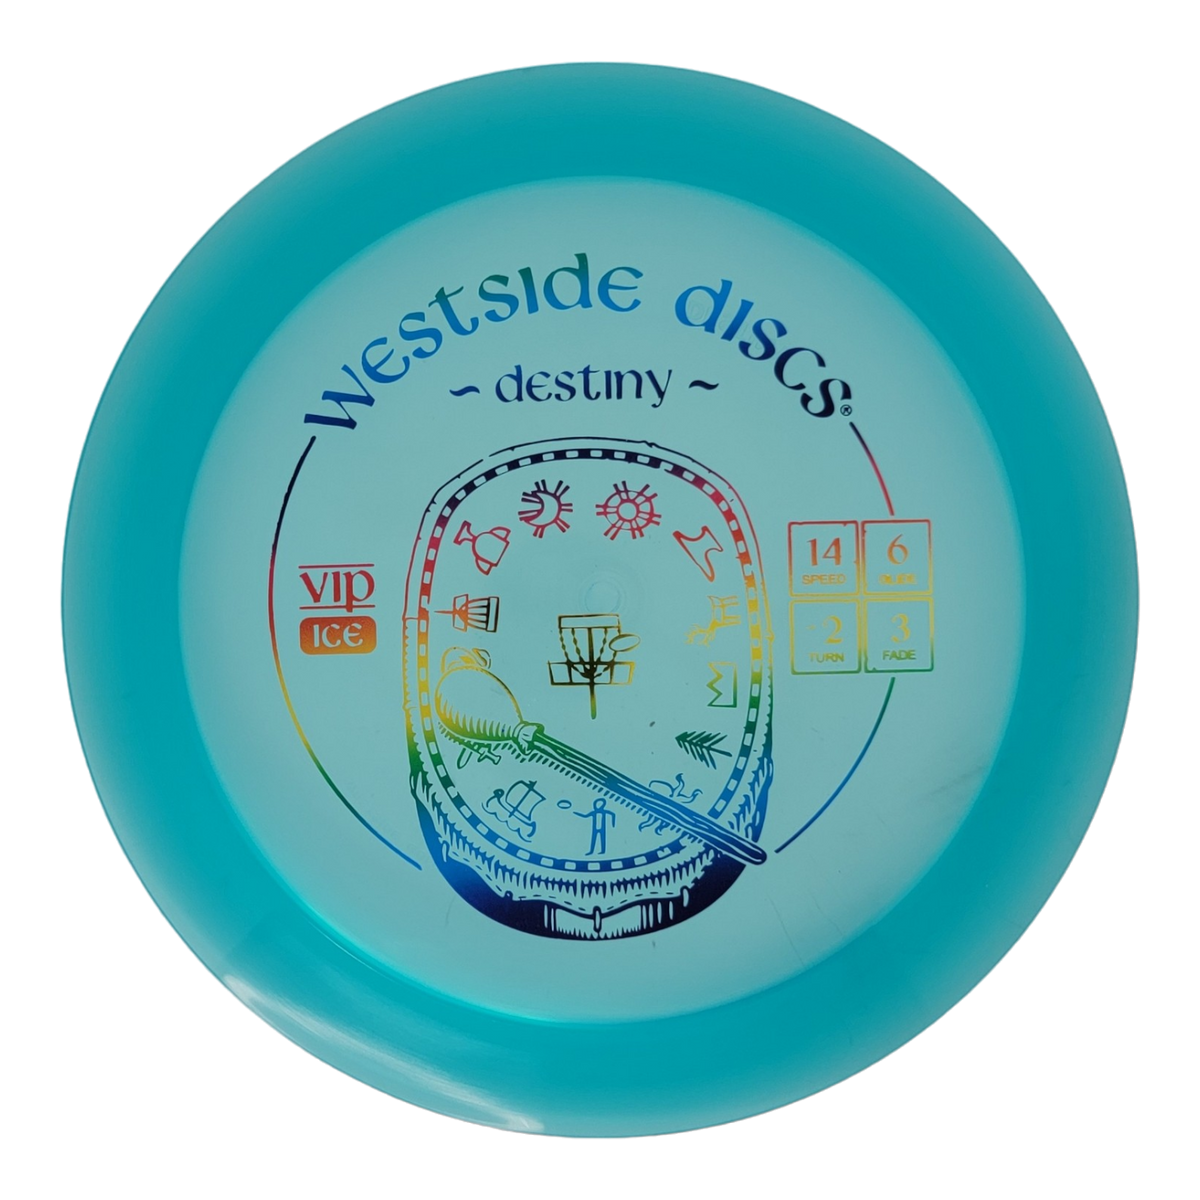 Westside Discs VIP Ice Destiny